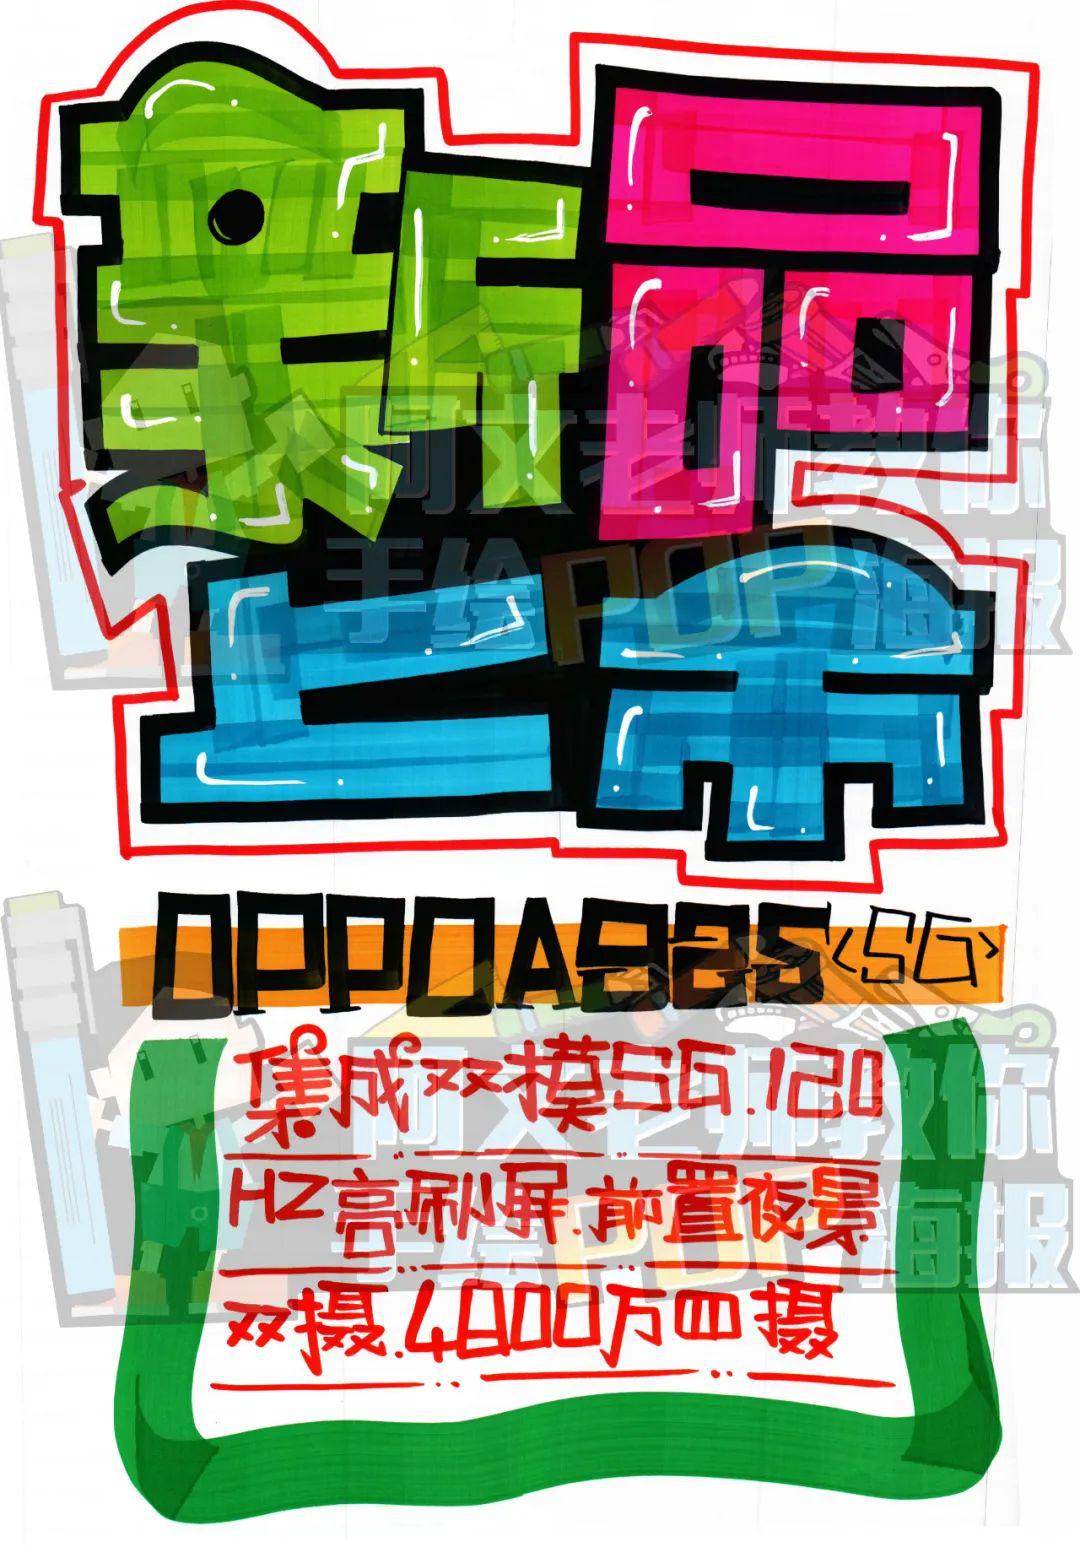 芦荟pop手绘海报图片